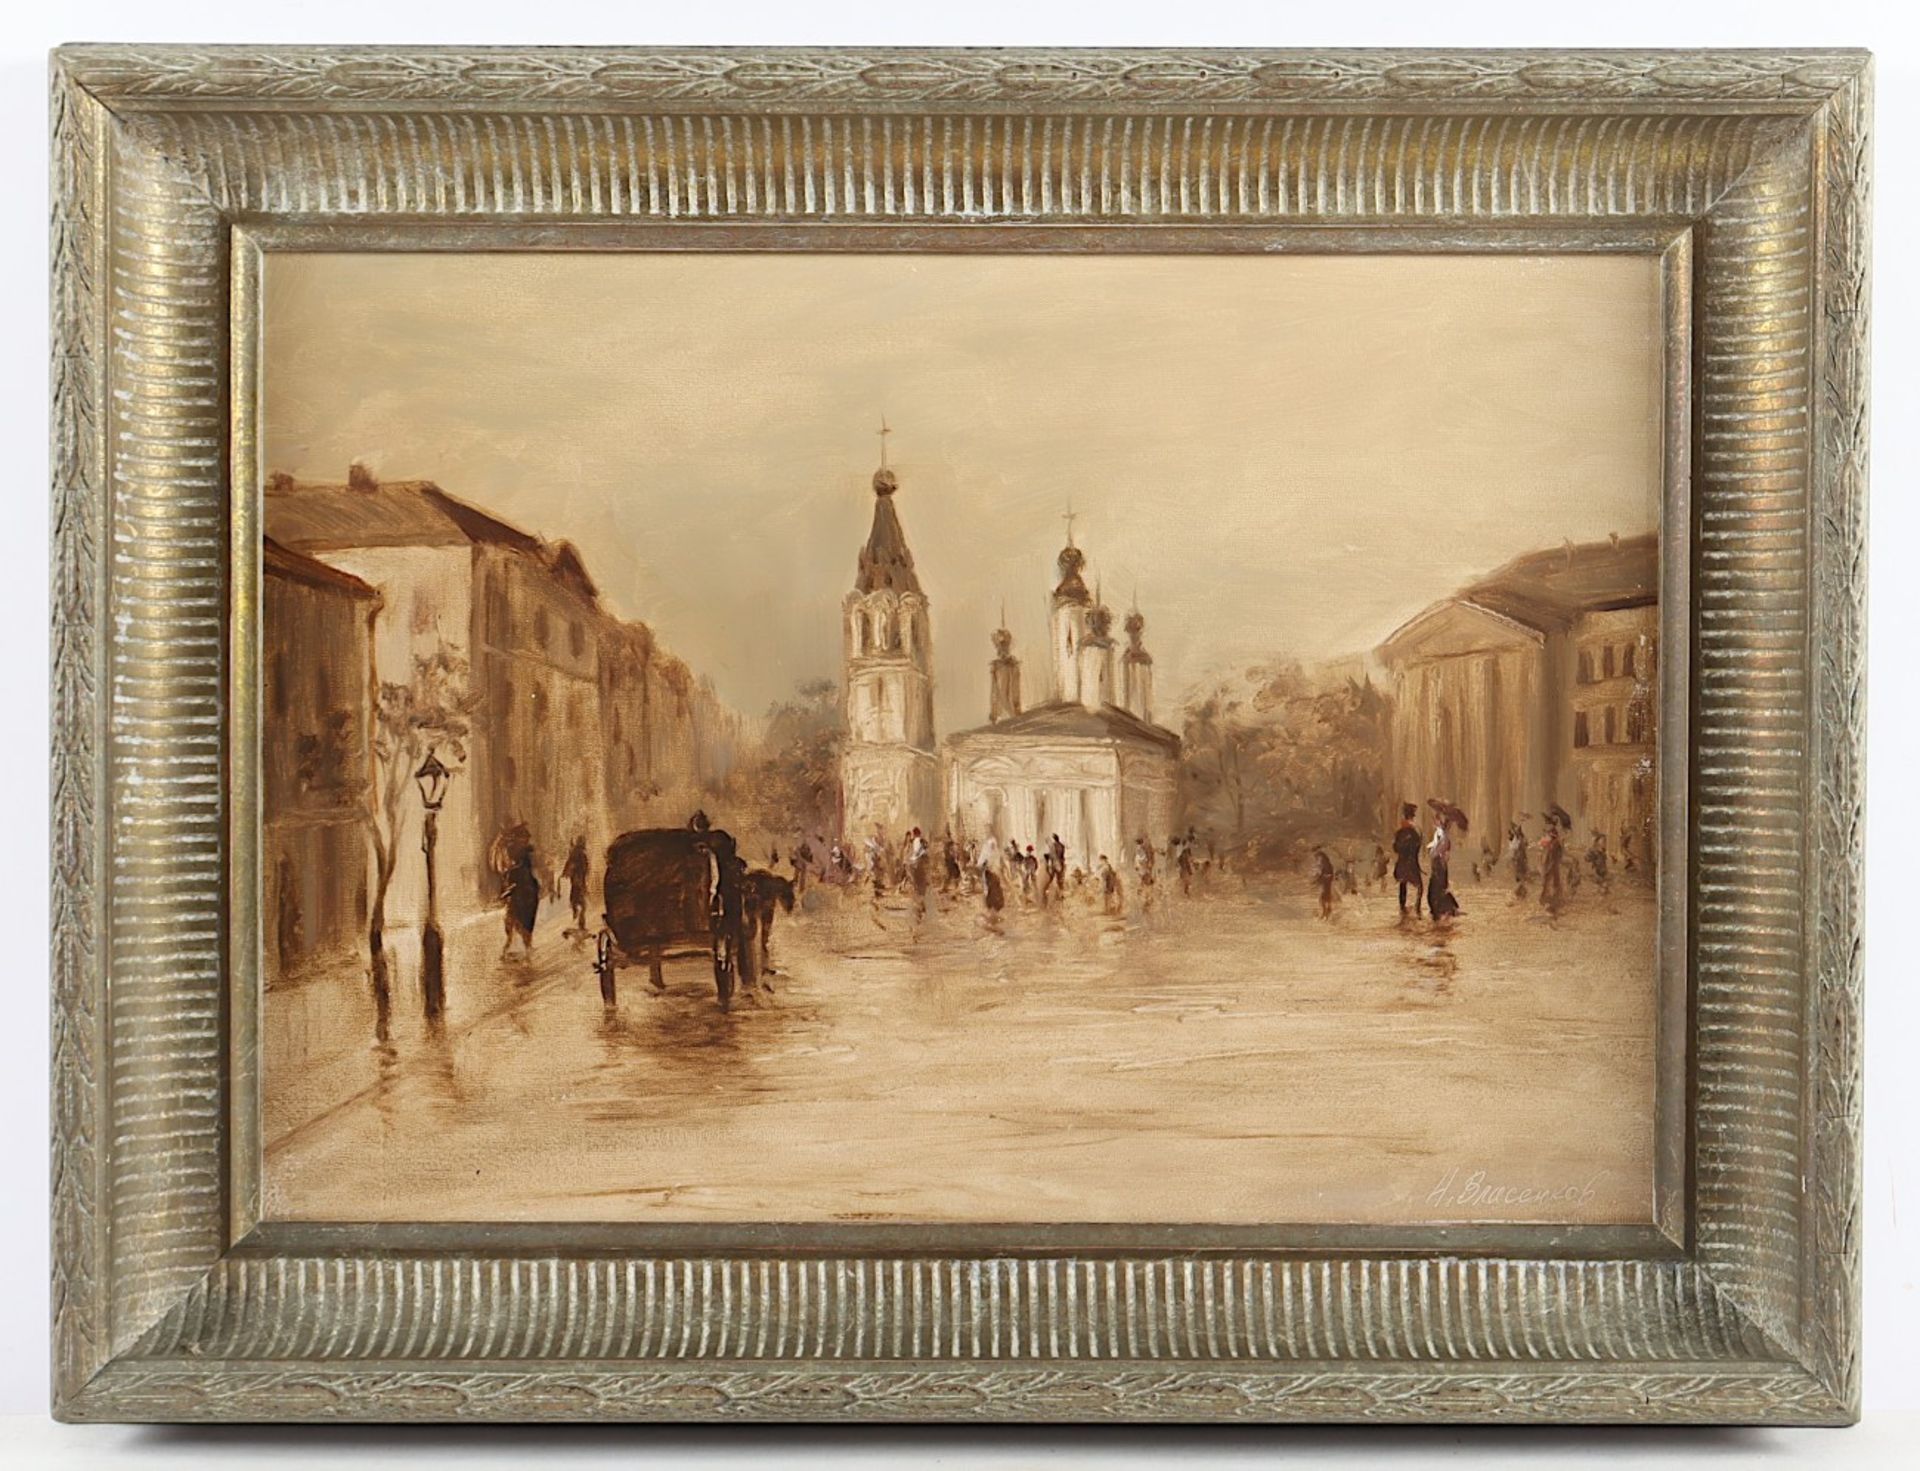 WRASENKOF, N. (Russischer Maler des 20.Jh.), "Platz in einer russischen Stadt", Öl/Malkarton, 36 x 